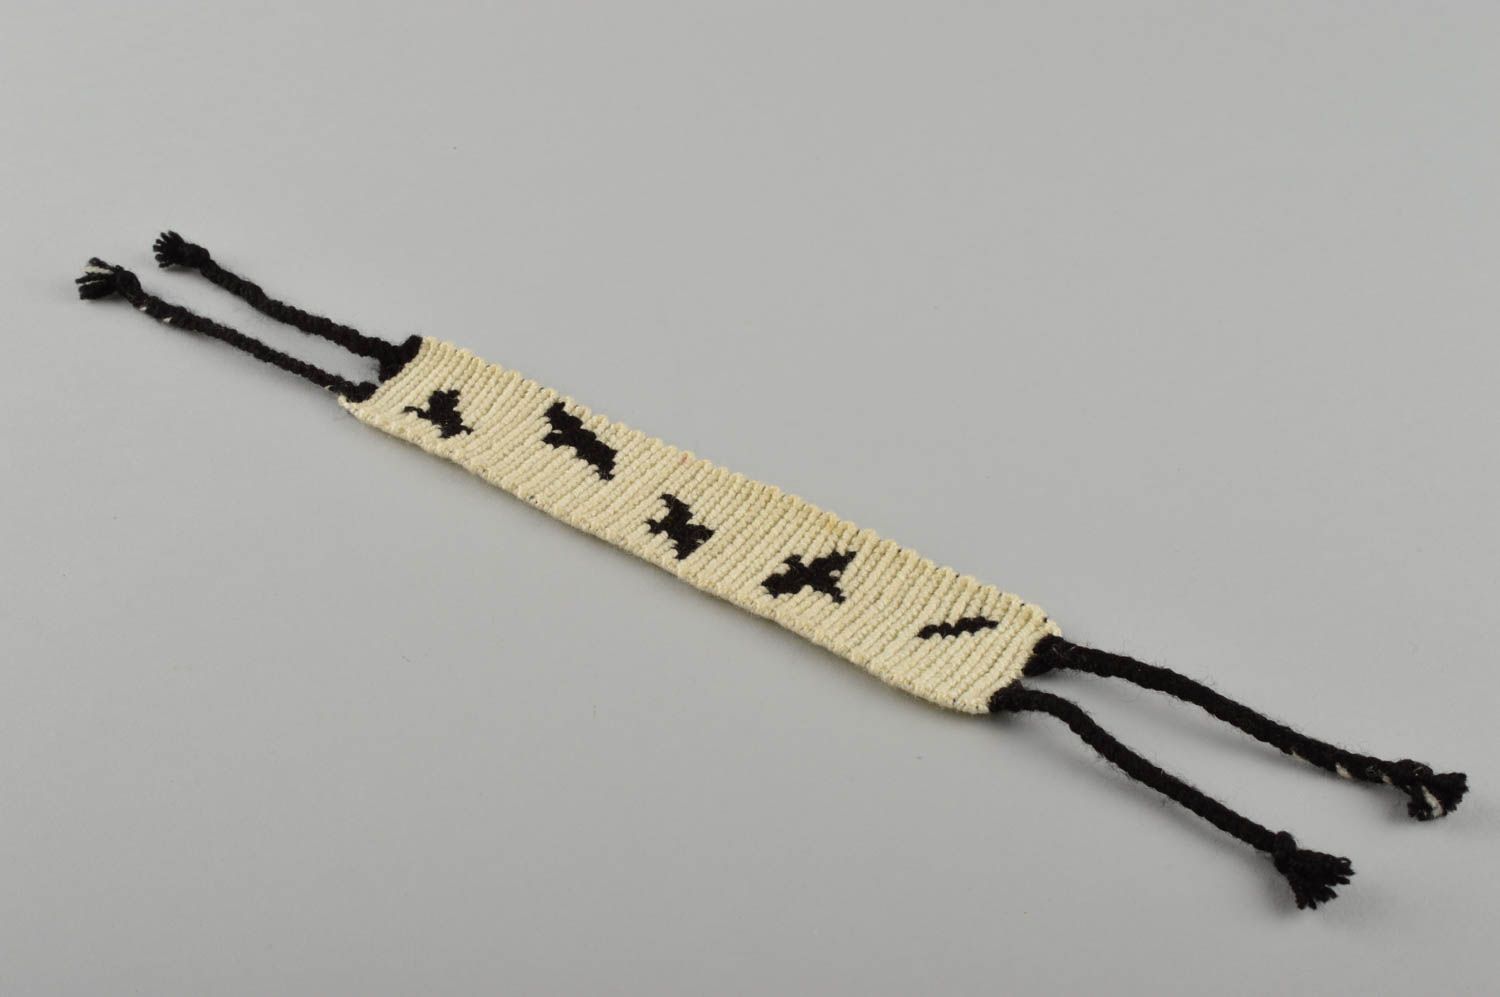 Textil Schmuck handgemachtes Stoff Armband elegantes schönes Armband Frauen foto 1